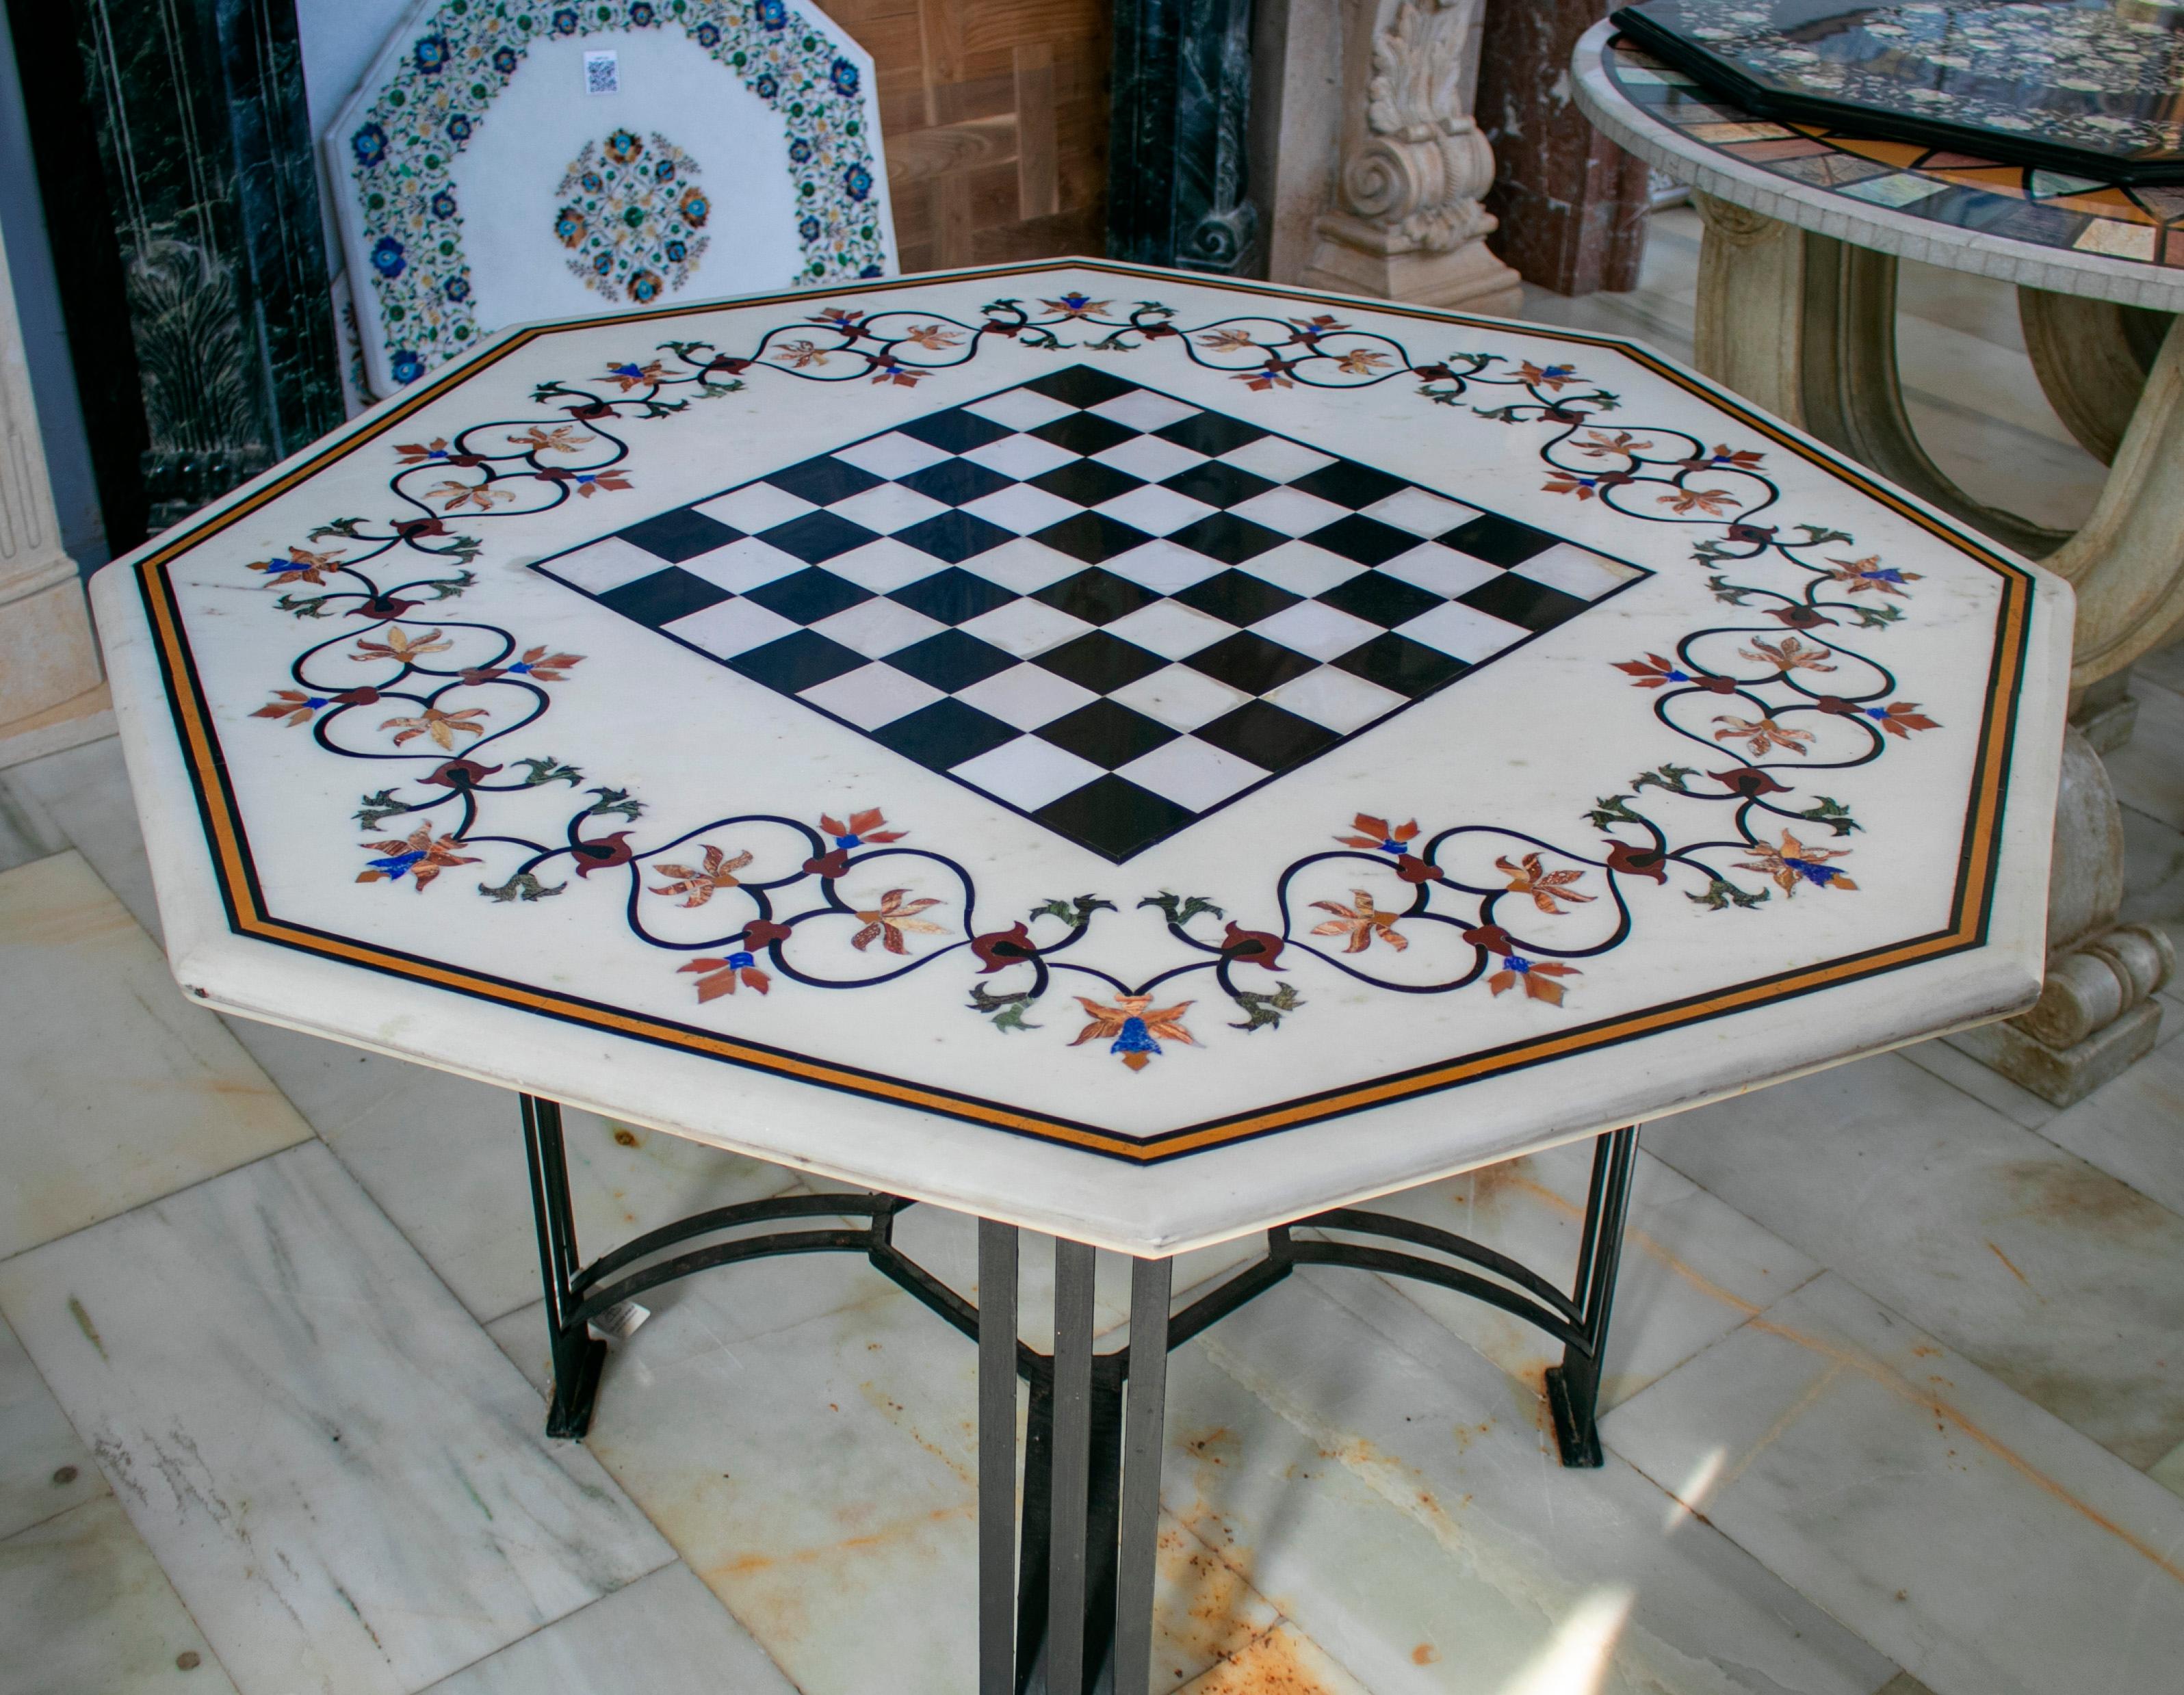 Plateau octogonal de table d'échecs en marbre blanc mosaïqué selon la technique italienne de la pierre dure, avec incrustations de lapis bleu, de jade vert, d'améthyste rose et d'autres pierres semi-précieuses.
 